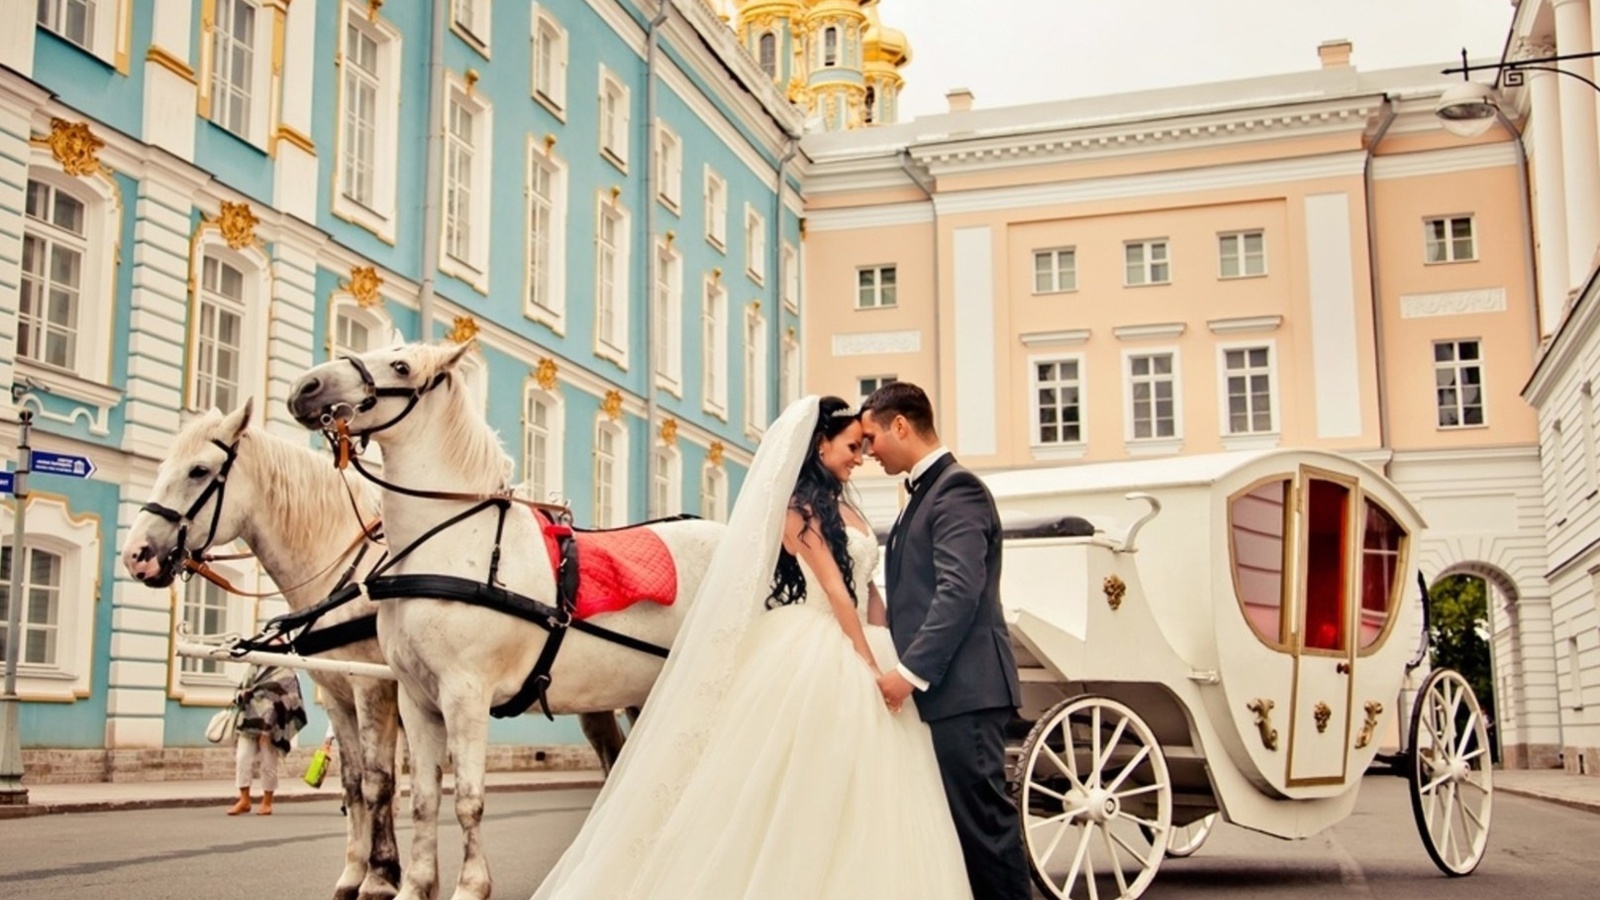 Обои Wedding in carriage 1600x900